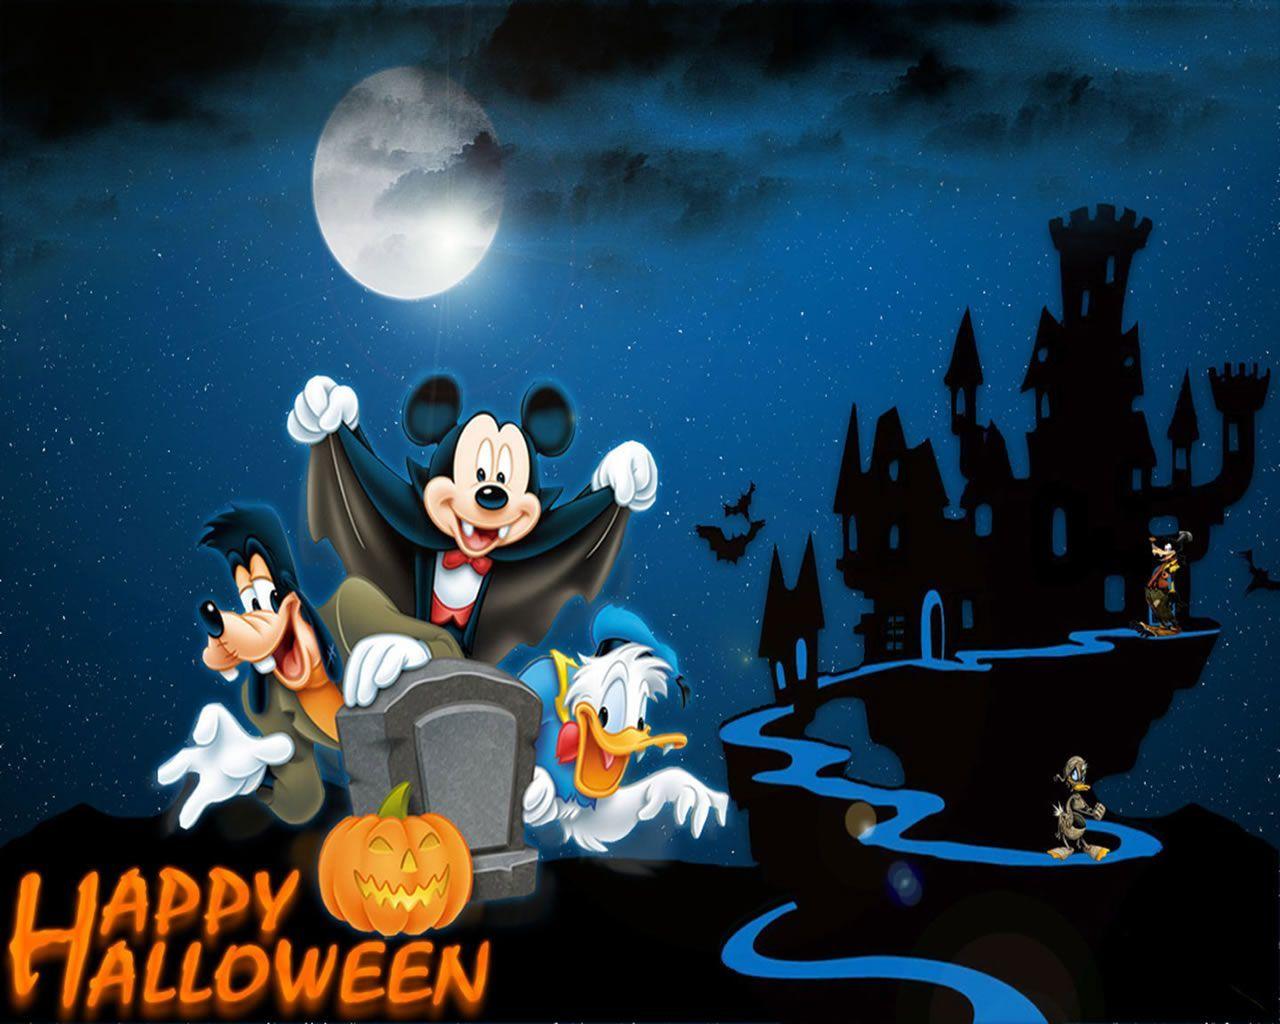 77 Disney Halloween Wallpaper Backgrounds  WallpaperSafari